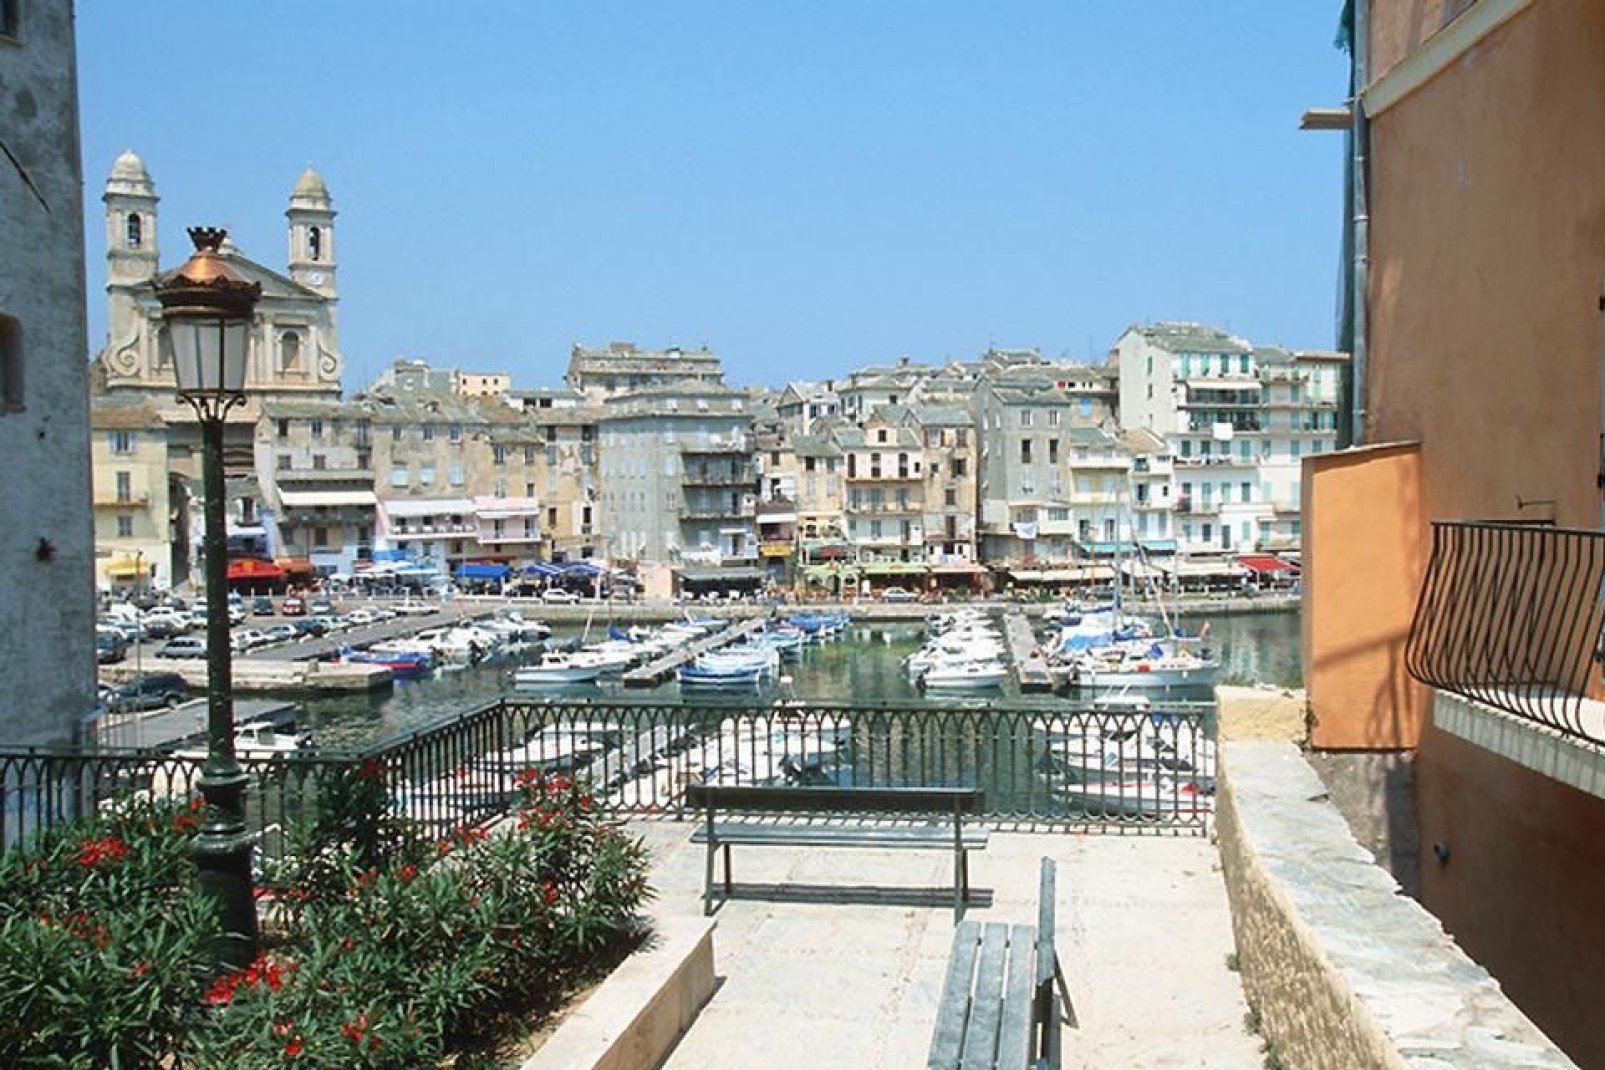 La ville de Bastia est organisée autour de son vieux port, l'ancienne marine de pêcheurs qu'on appelait Porto cardo.